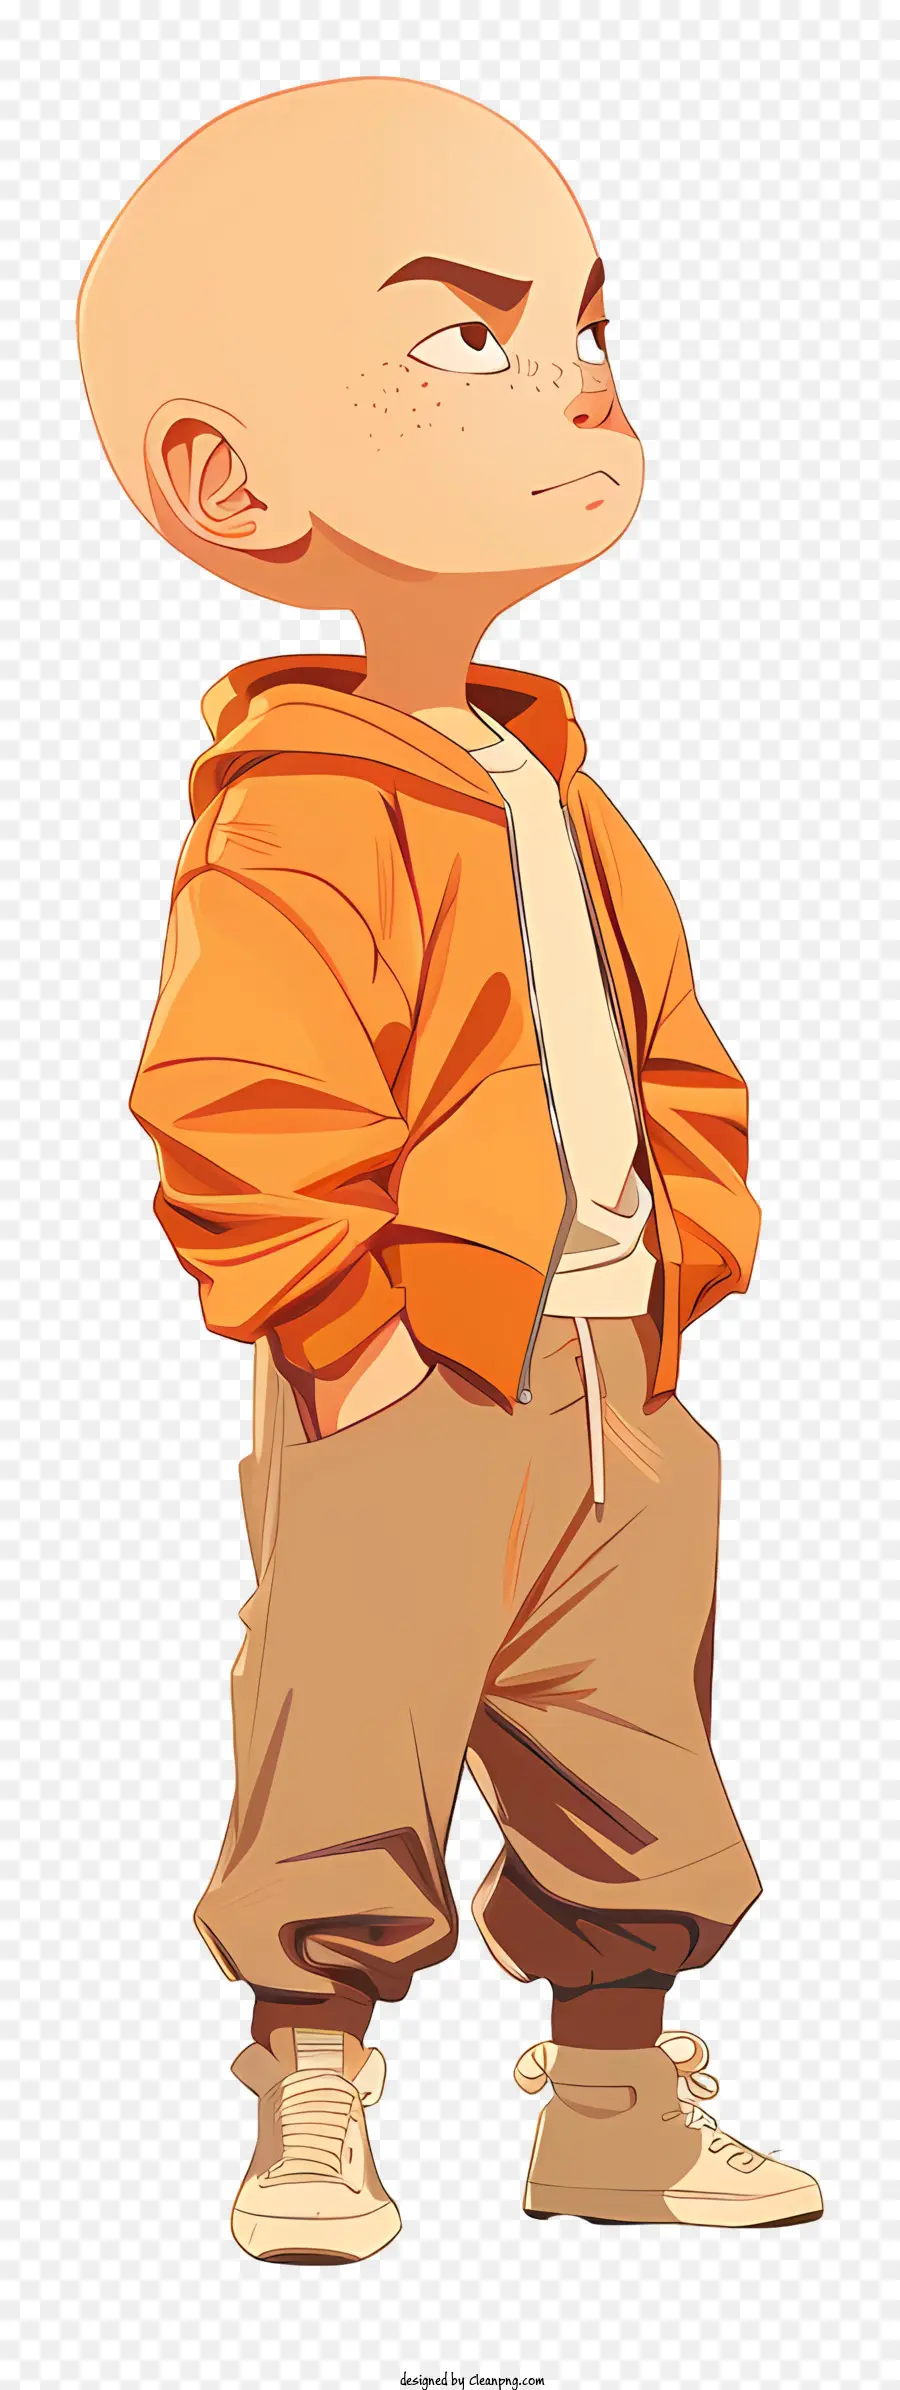 Krillin Bald Man Orange Jacke Brown Hosen ernsthafter Ausdruck - Glatze Mann in Orangenjacke, ernsthafter Ausdruck